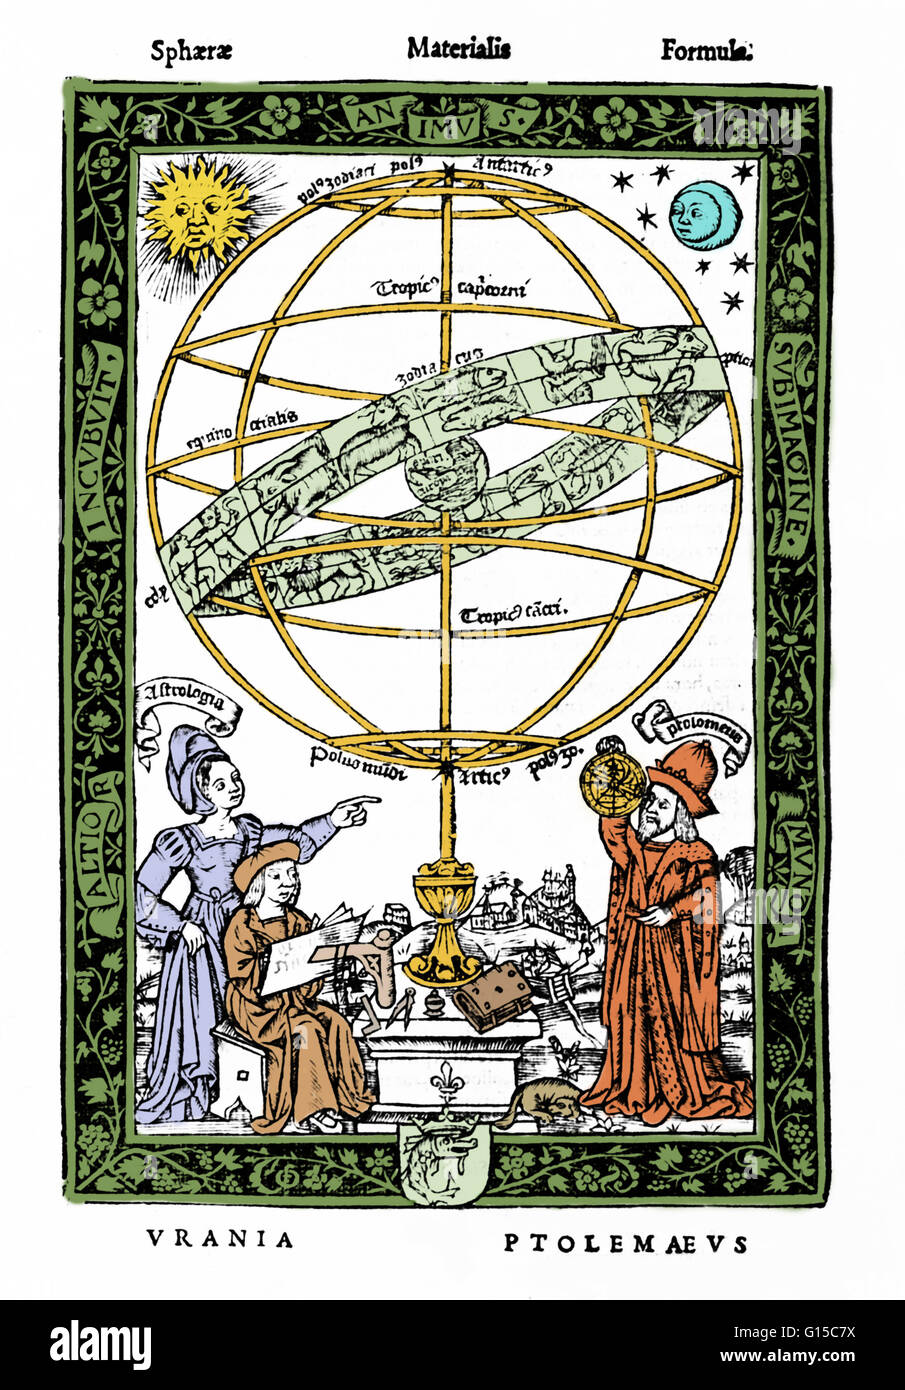 Eine Armillarsphäre (Variationen sind bekannt als kugelförmige Astrolabium, Armilla oder Armil) ist ein Modell der Objekte am Himmel (in der Himmelskugel), bestehend aus eines kugelförmigen Rahmens der Ringe, zentriert auf der Erde, die himmlischen Längengrade darstellen ein Stockfoto